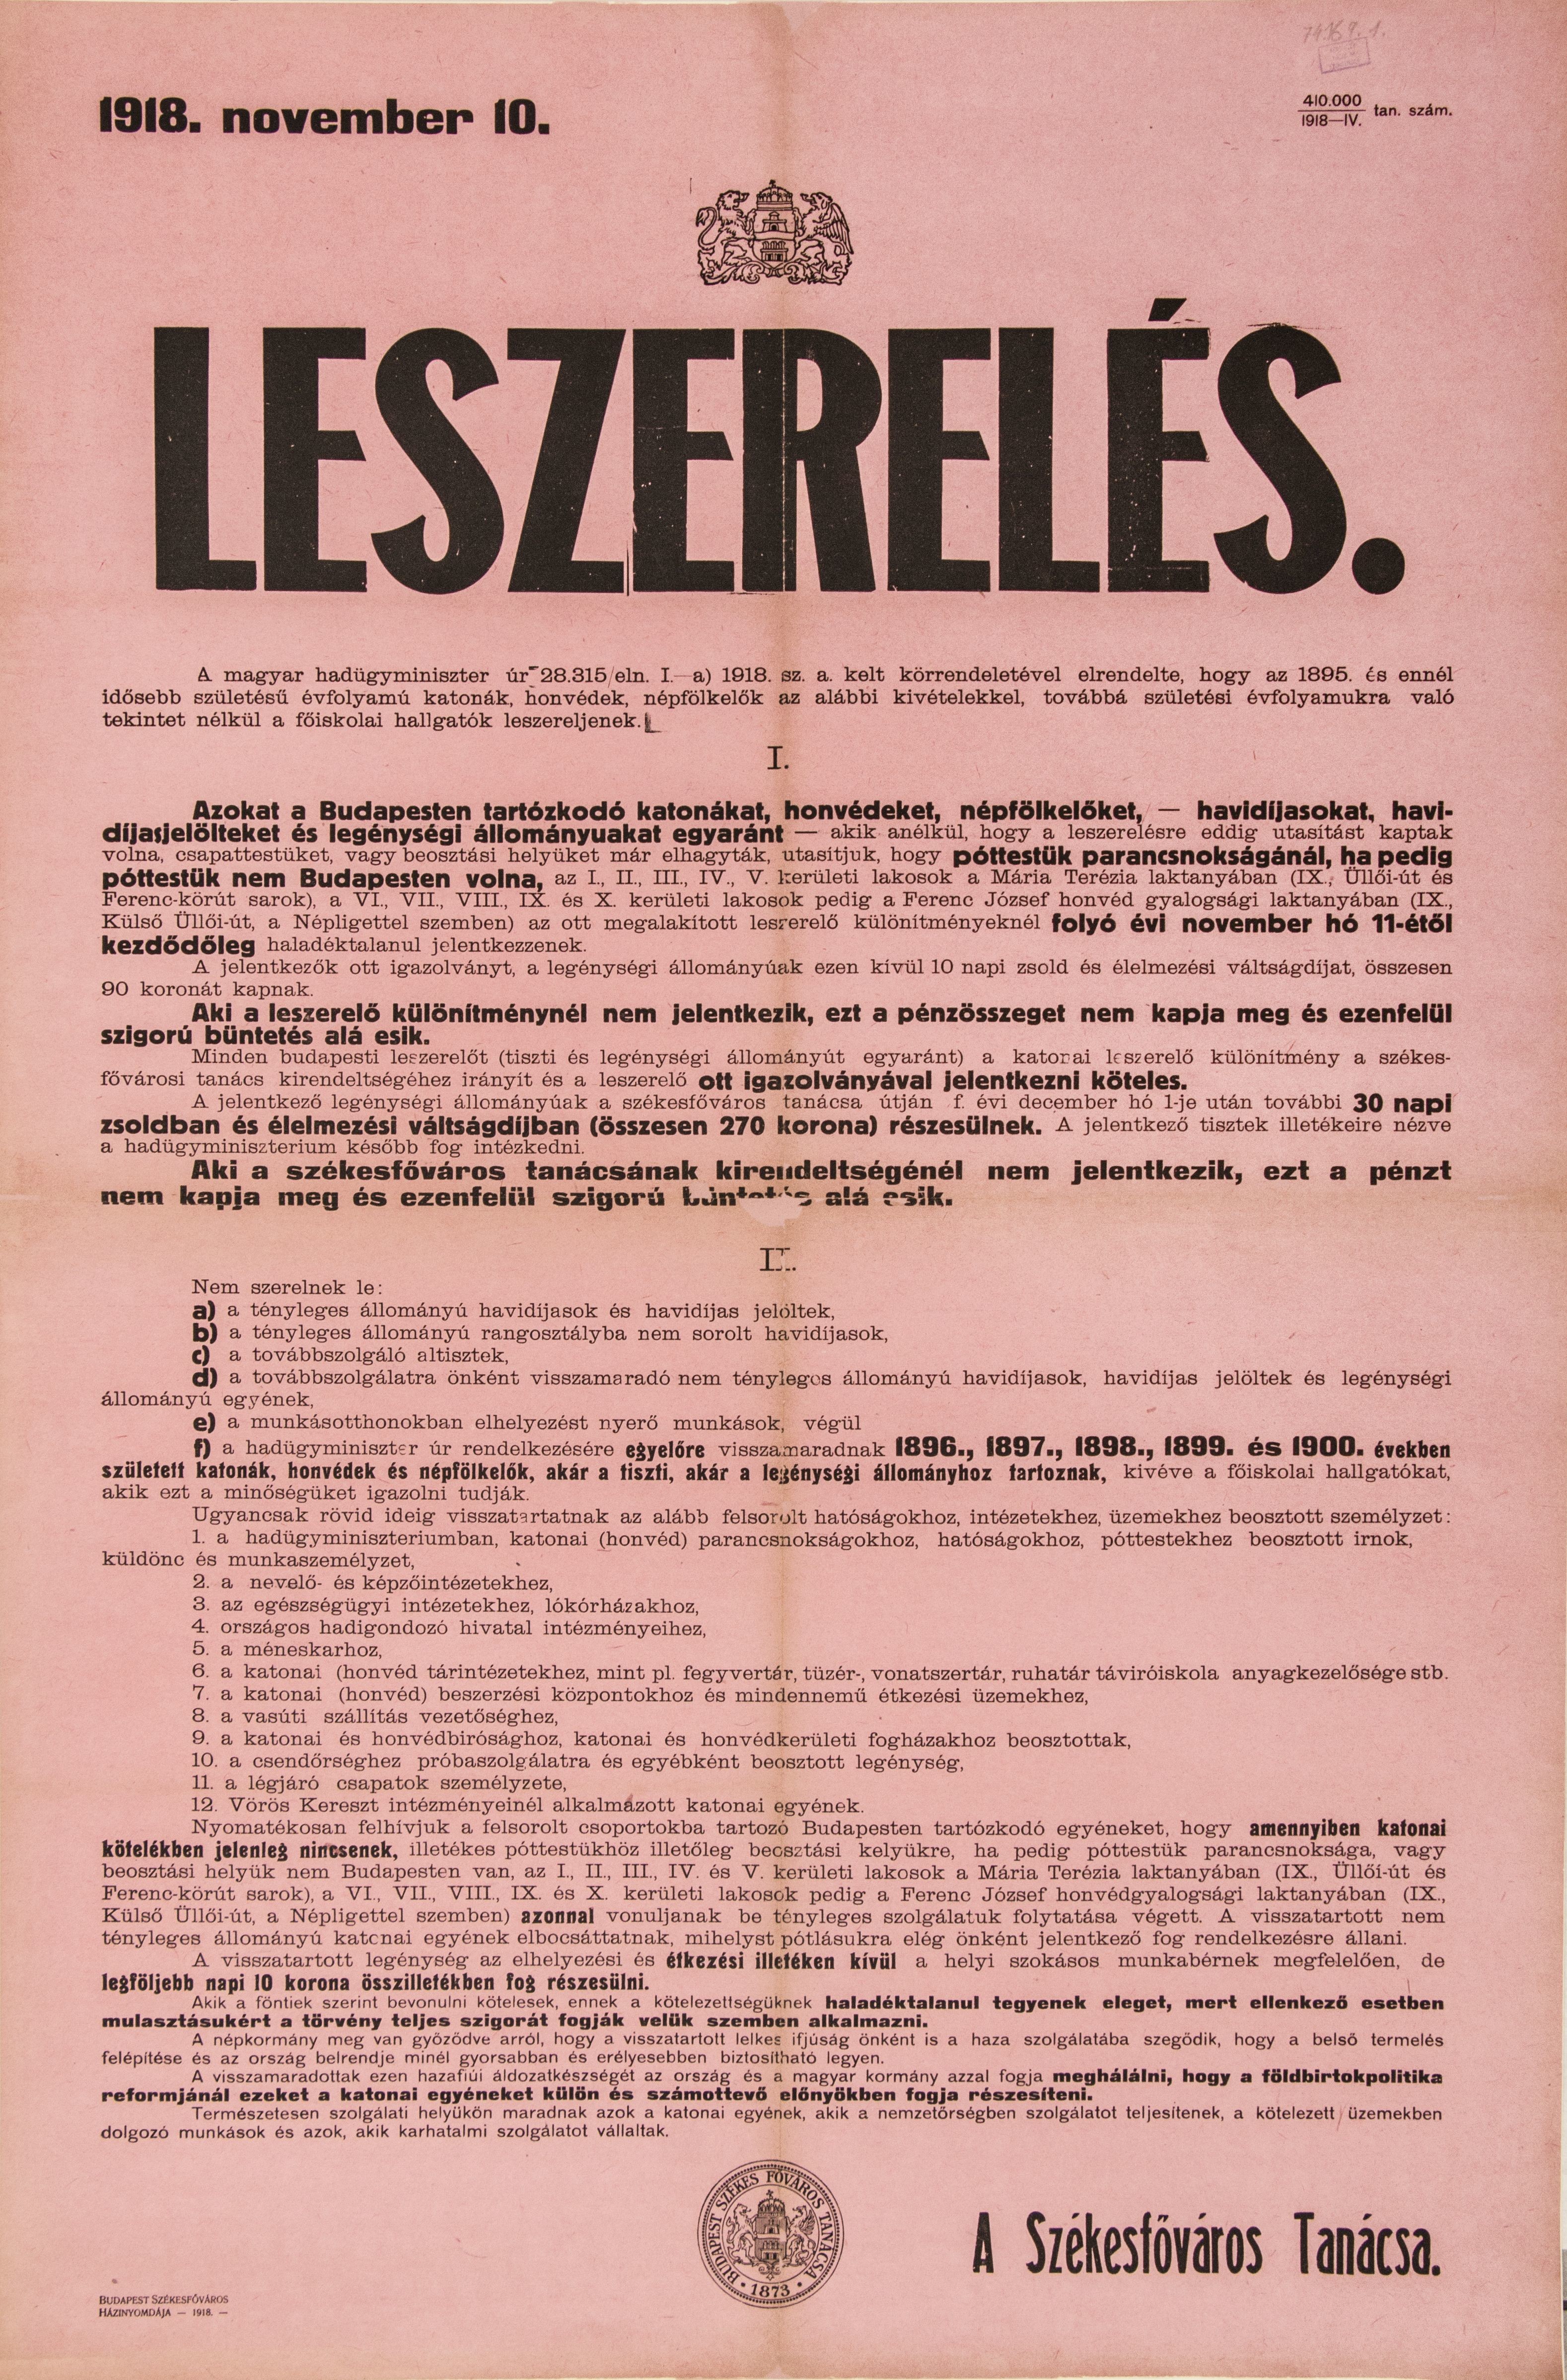 Leszereléssel kapcoslatos tudnivalók, 1918.11.10. (Ferenczy Múzeumi Centrum CC BY-NC-SA)